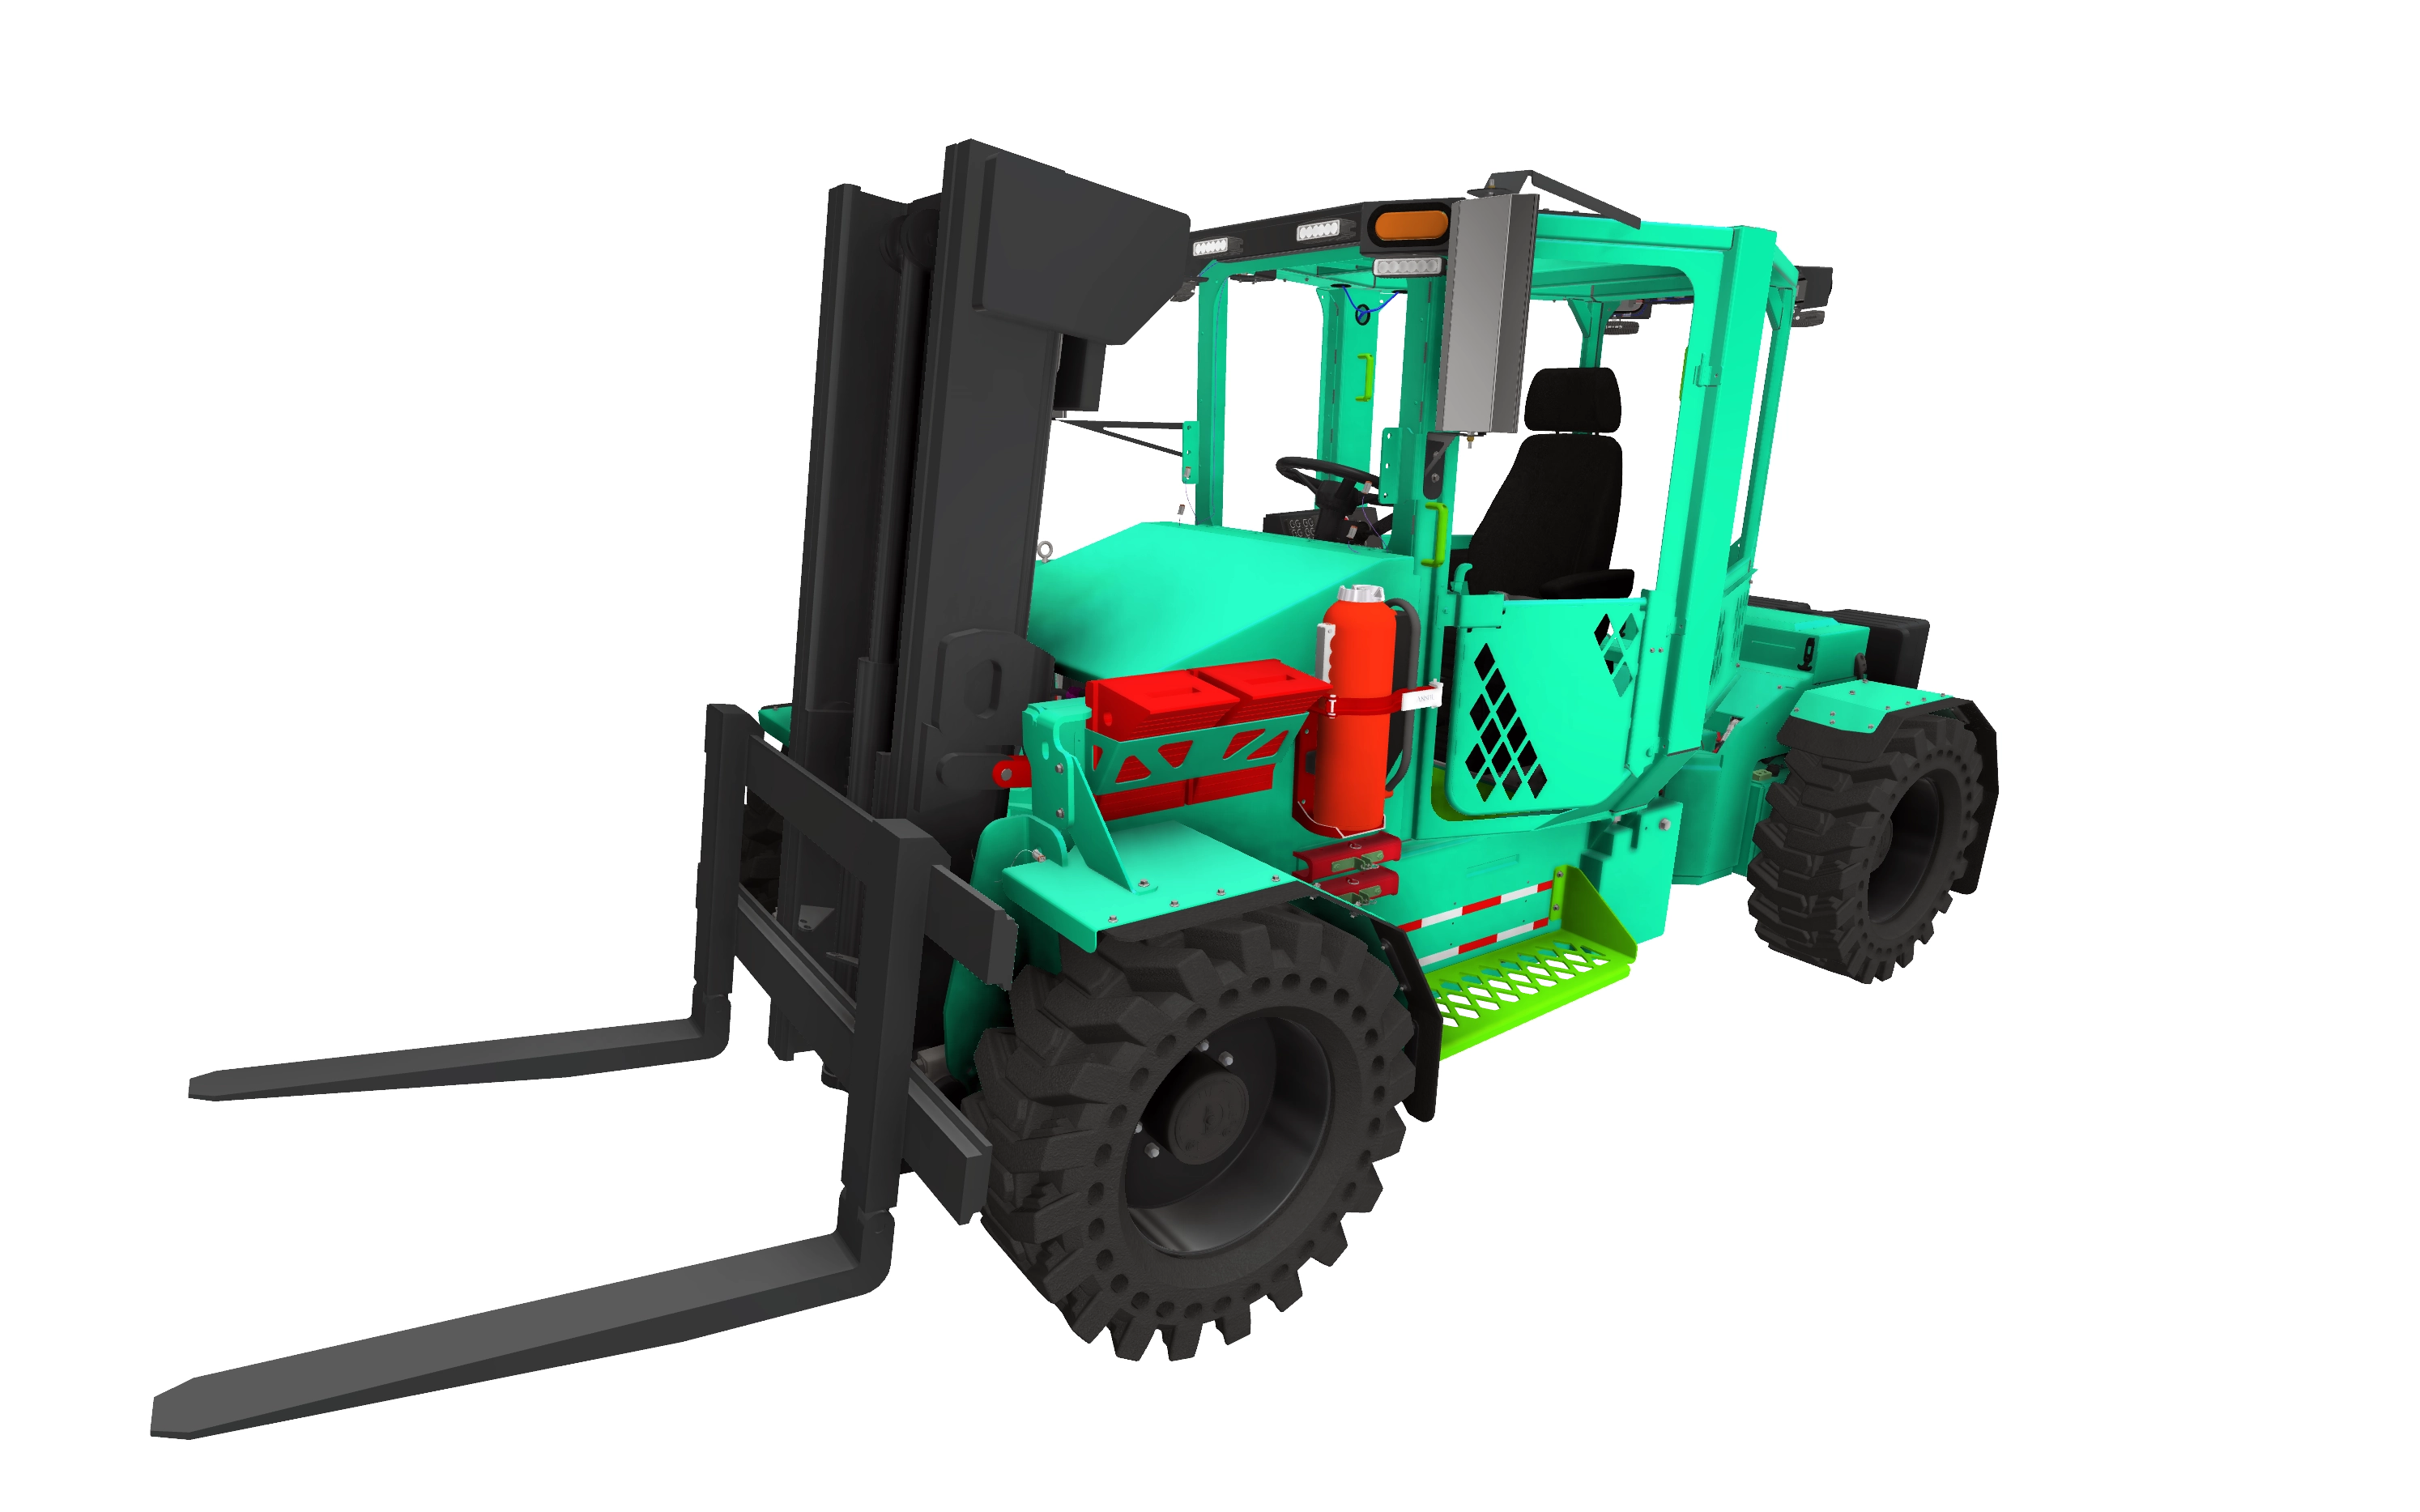 Rokion R700 Forklift